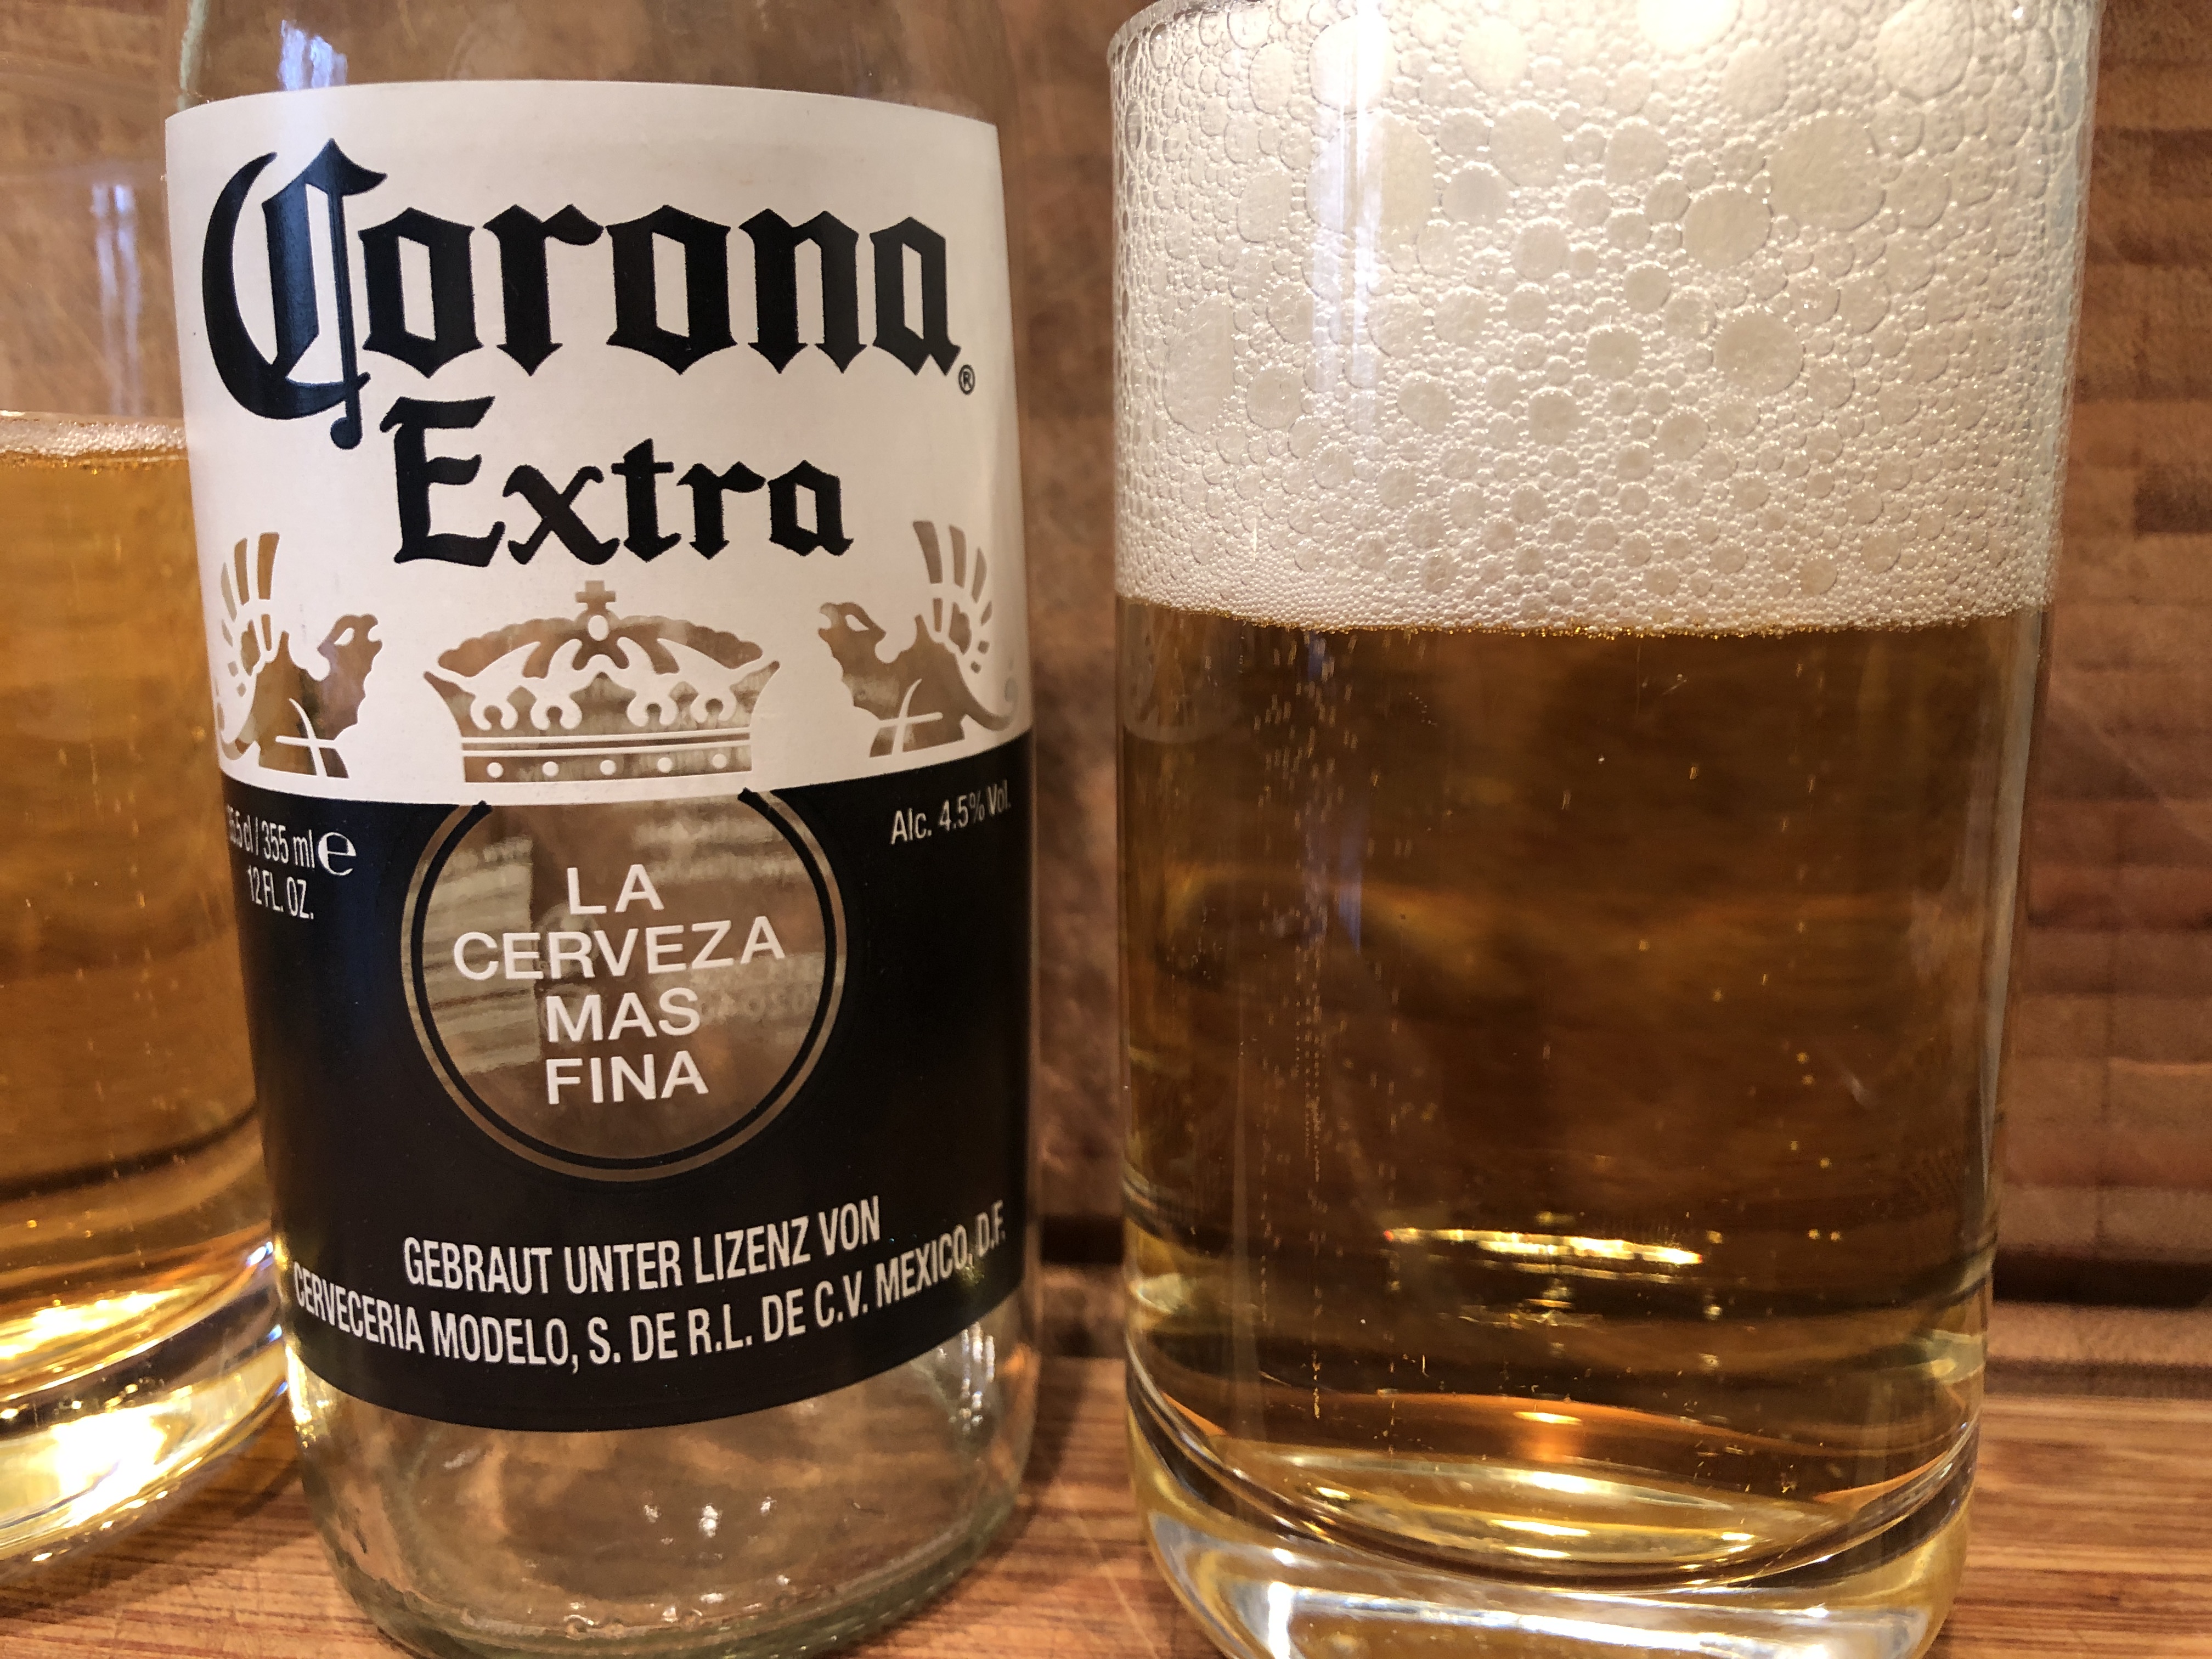 Corona Extra 